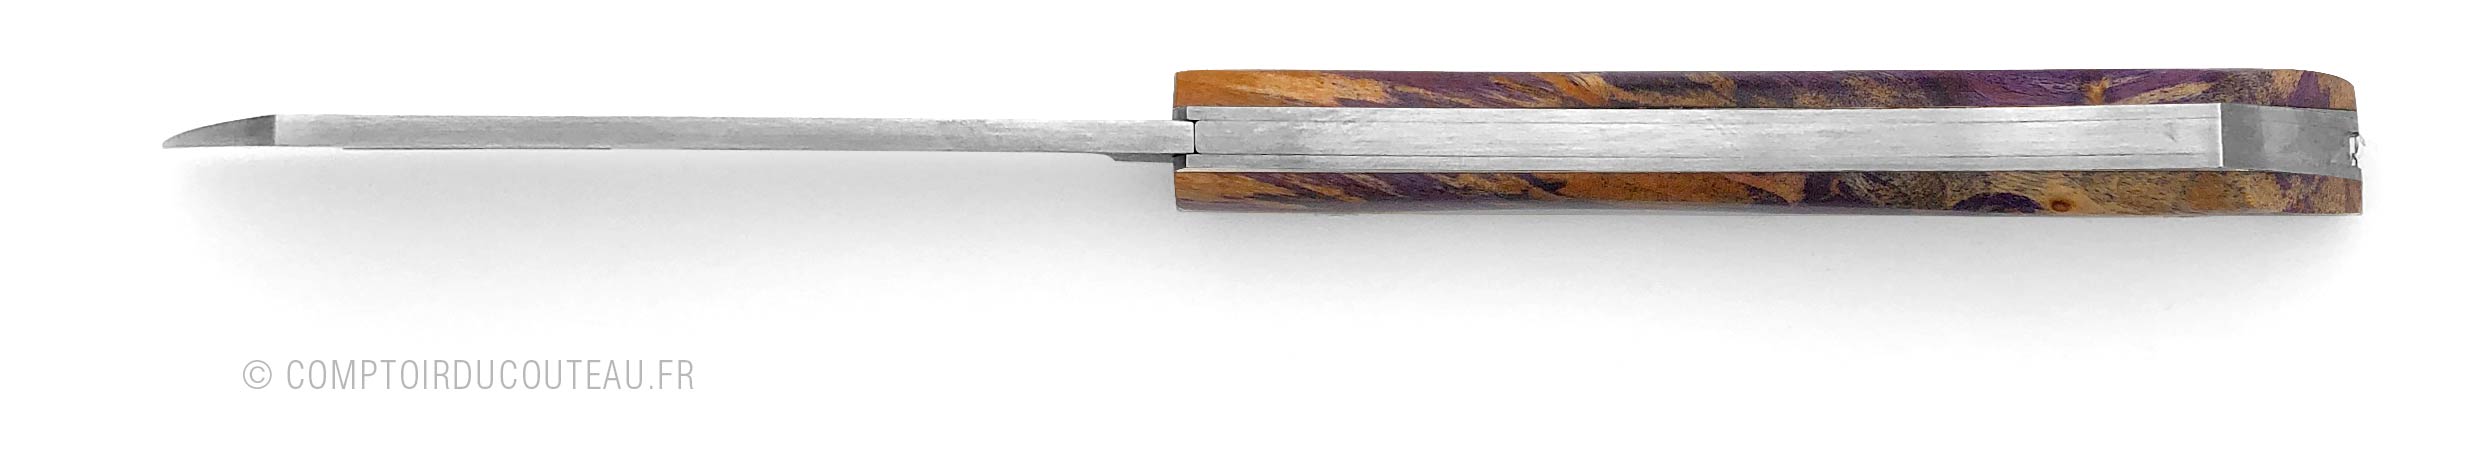 couteau Arca Andrea Manche en chêne stabilise Purple vue dessus